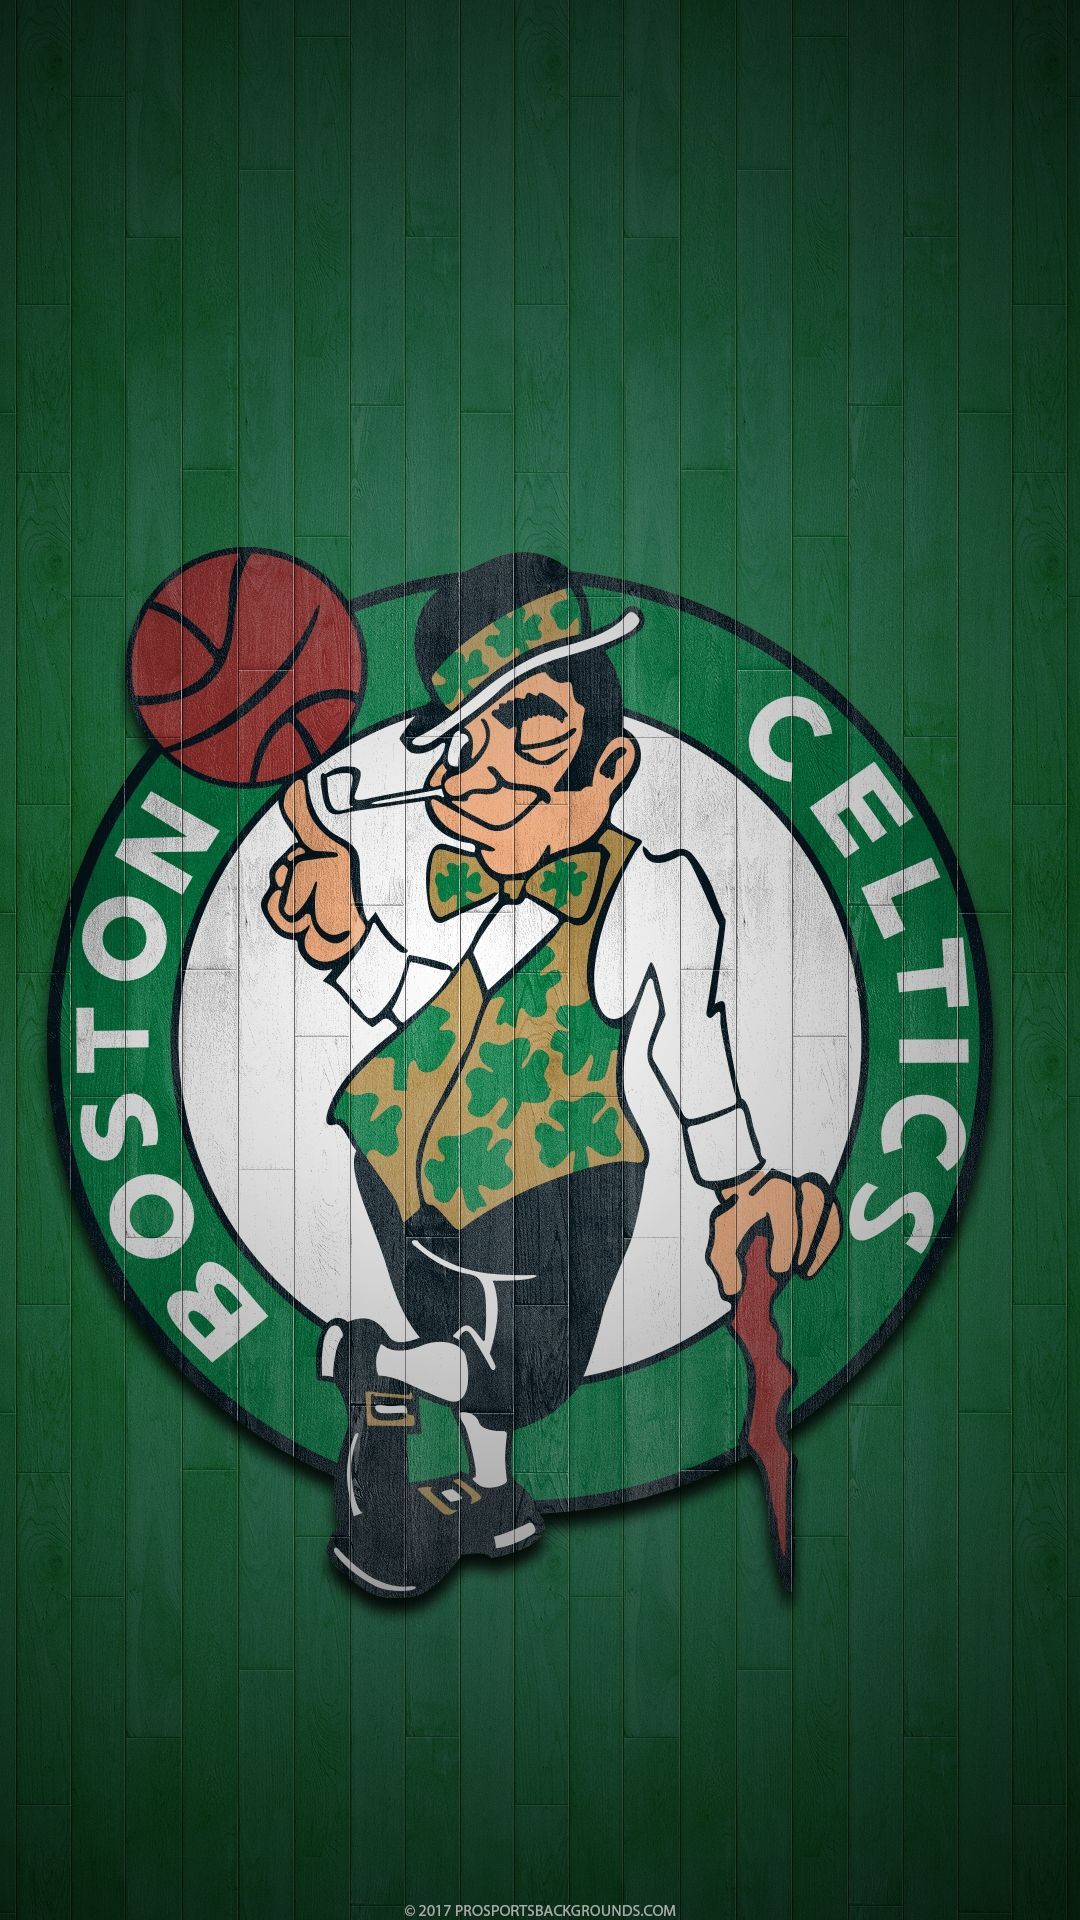 Top Boston Celtics Wallpaper For Android FULL HD 1080p For PC Background. Boston celtics wallpaper, Boston celtics logo, Boston celtics